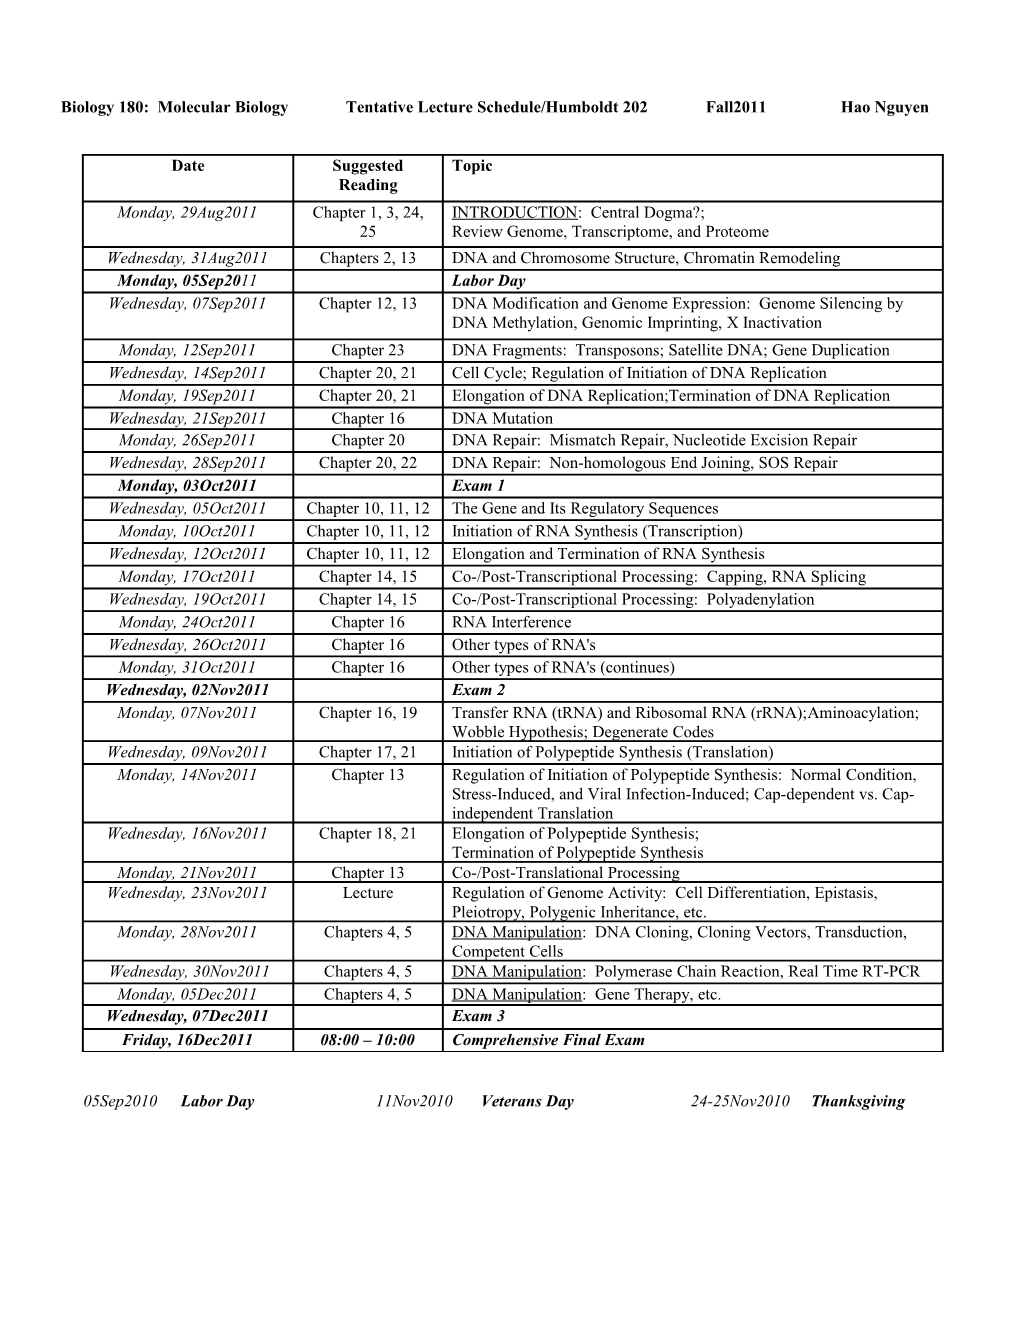 Biology 110 Laboratory Schedule